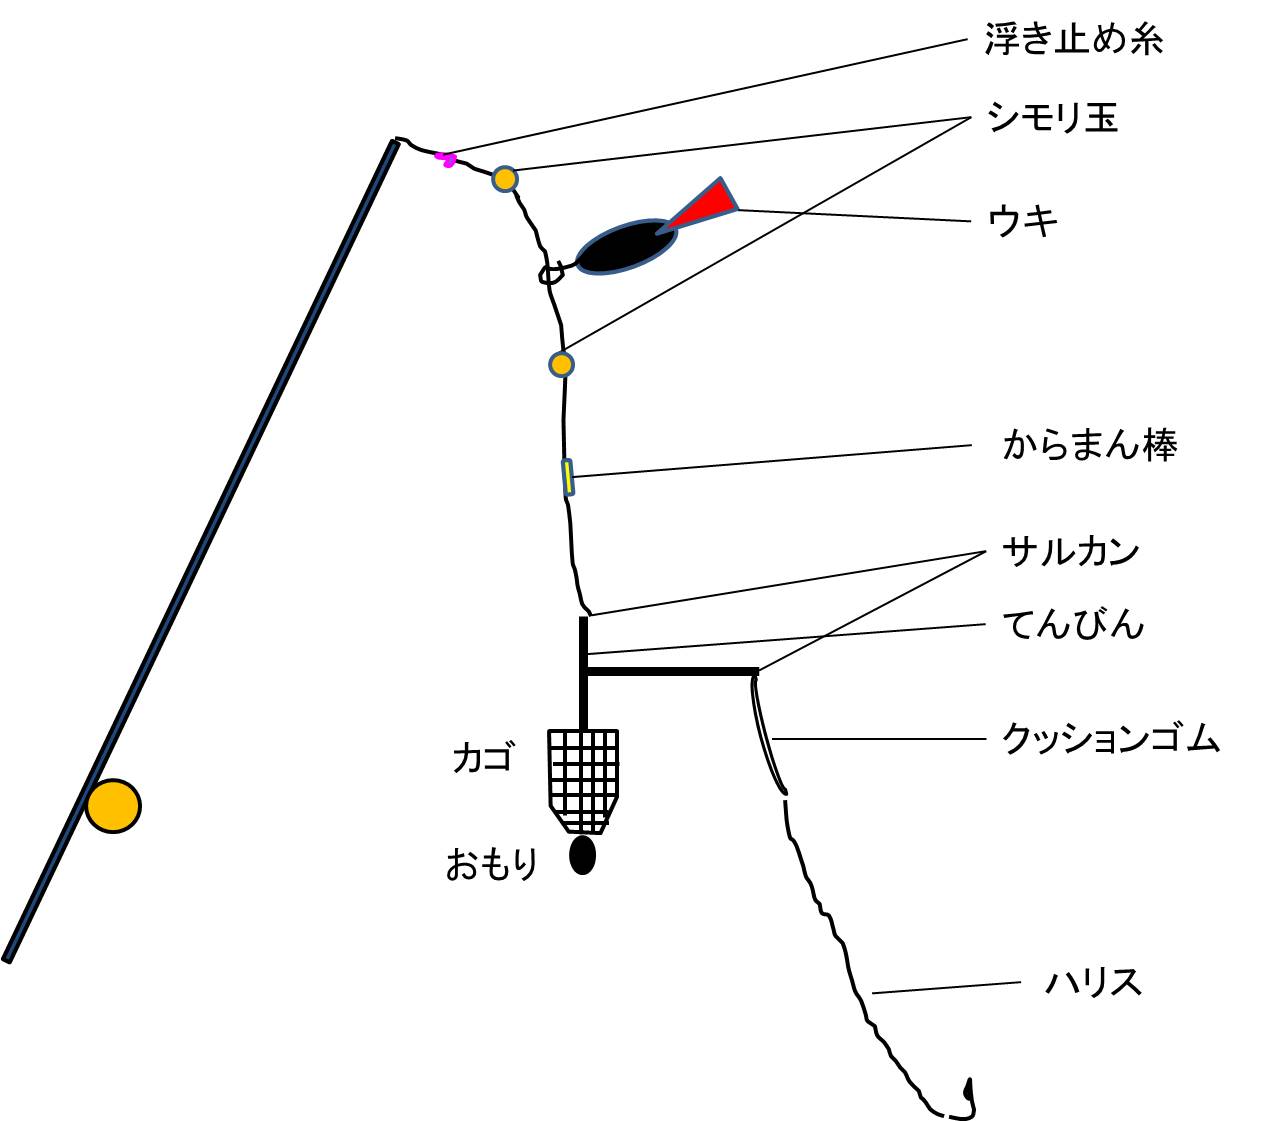 式根島のアカイカ釣行記 釣りポイント 仕掛け 初心者用のレンタル釣具等まとめ 東京monoブログ